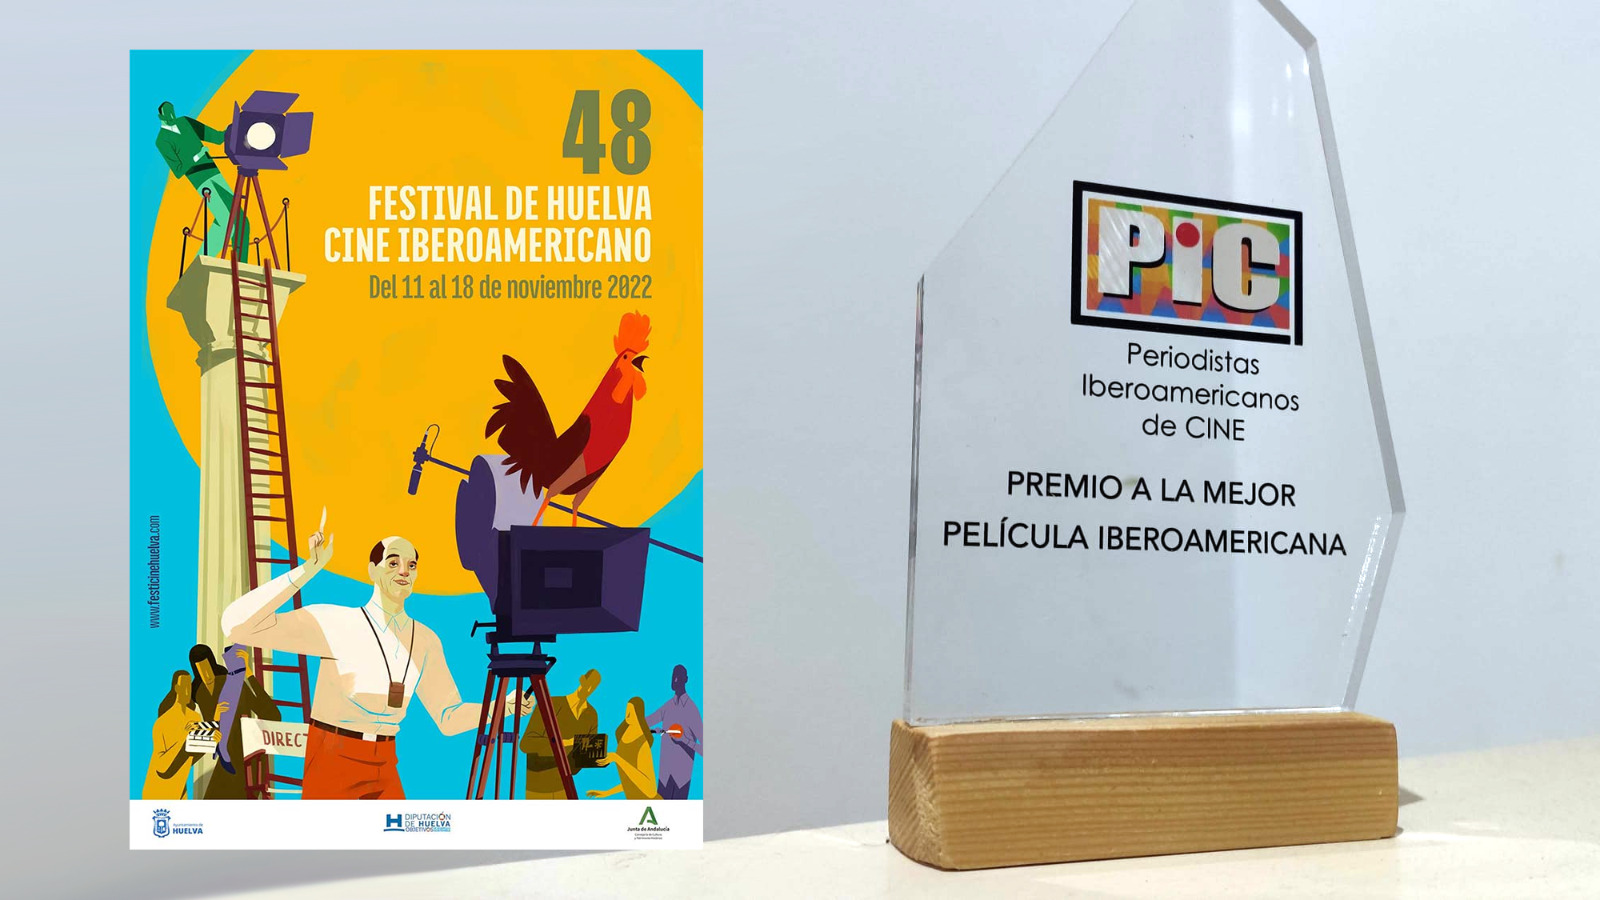 La asociación Periodistas Iberoamericanos de Cine entregará el Premio PIC a la Mejor Película en el Festival de Huelva